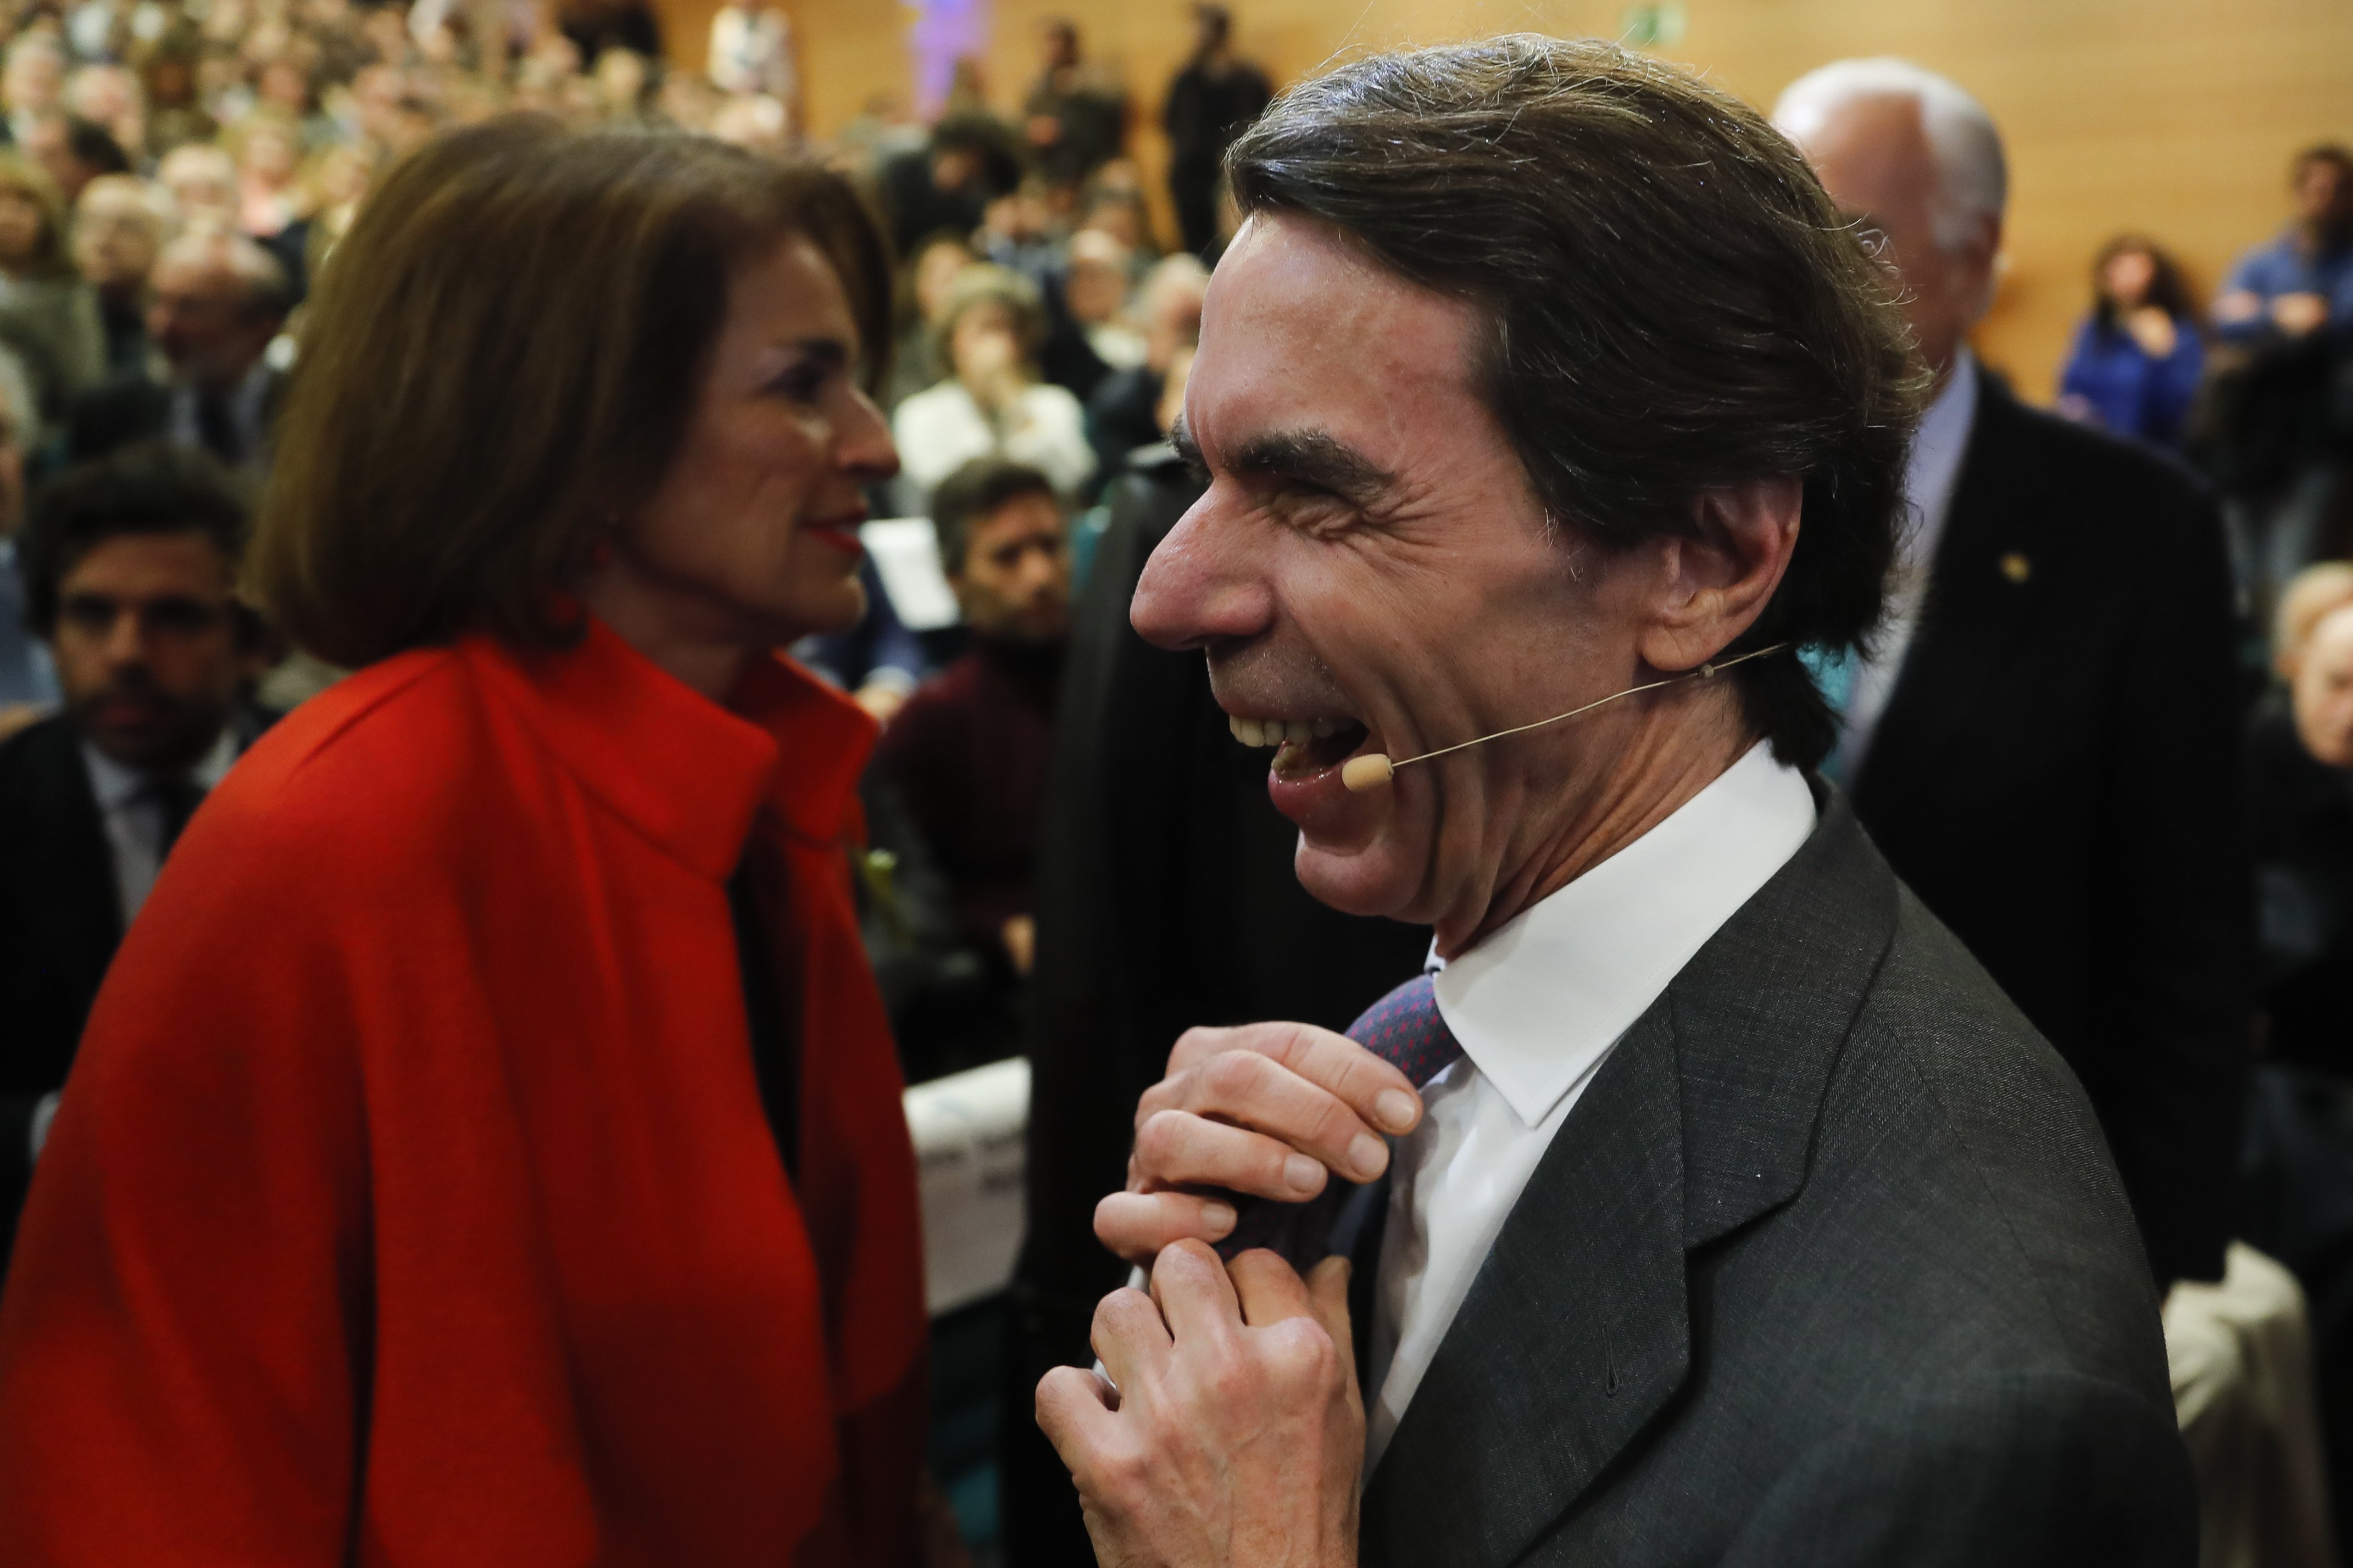 El nou i grotesc look d'Aznar desferma la xarxa: "¡Qué esperpento!"